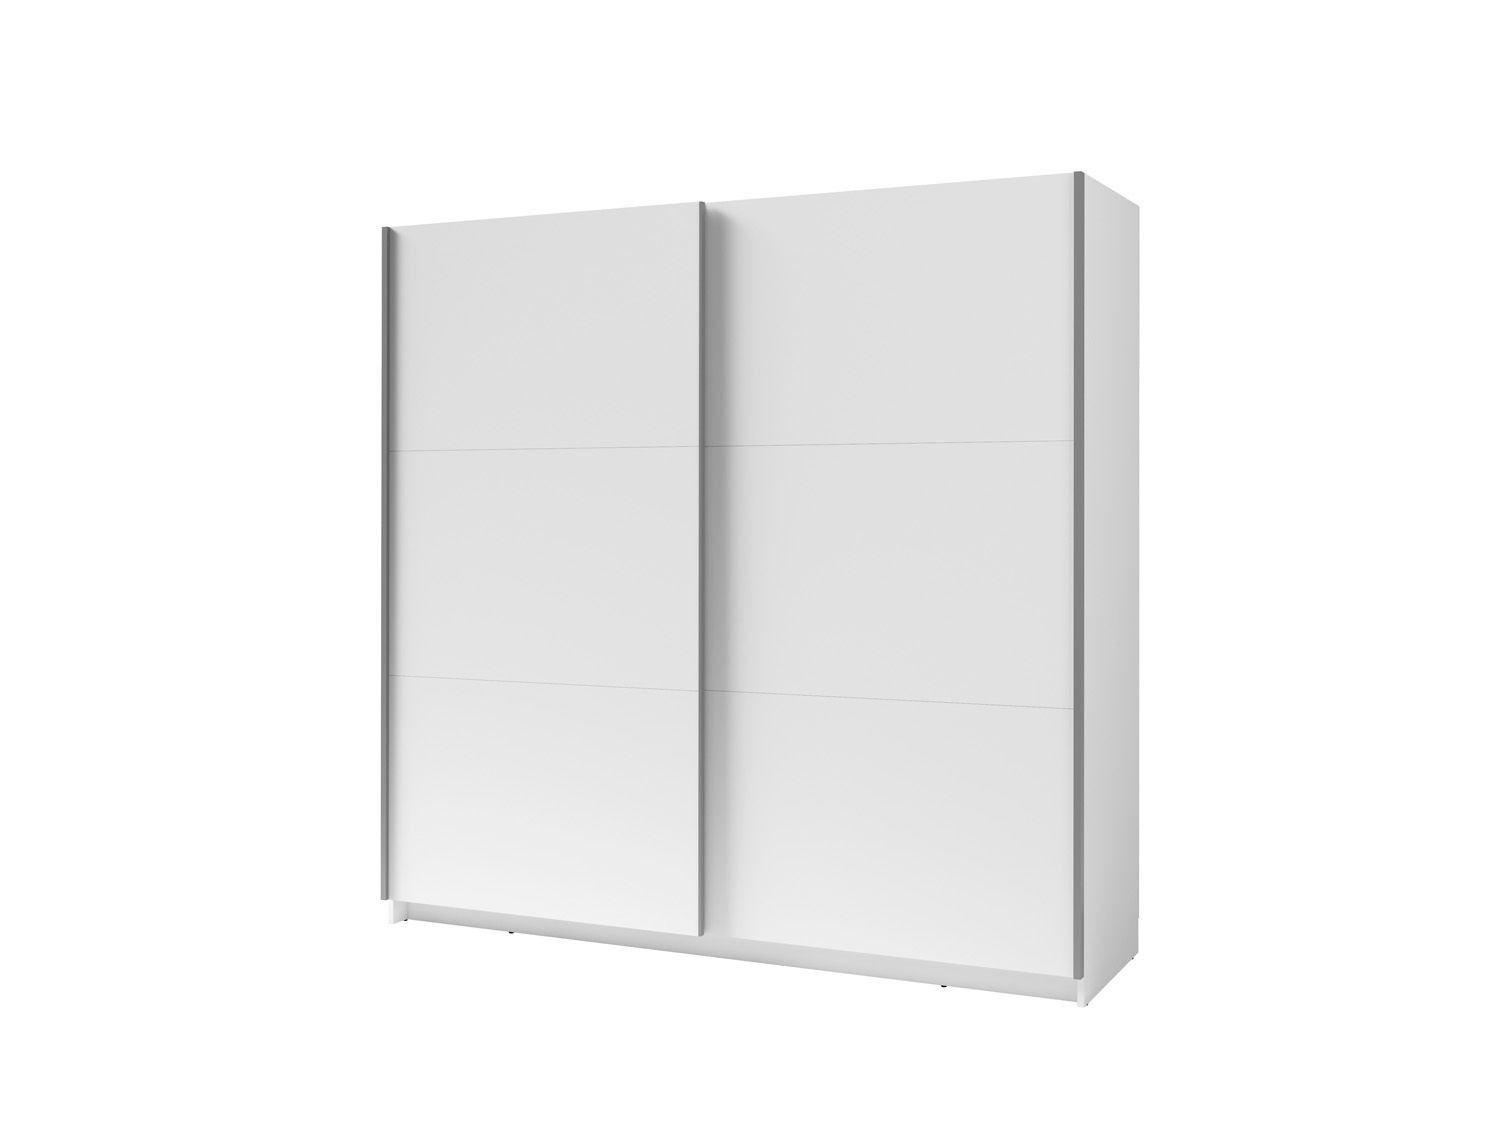 Armoire à portes coulissantes / Penderie Lamia, Couleur : Blanc - dimensions : 207 x 150 x 62 cm (h x l x p)